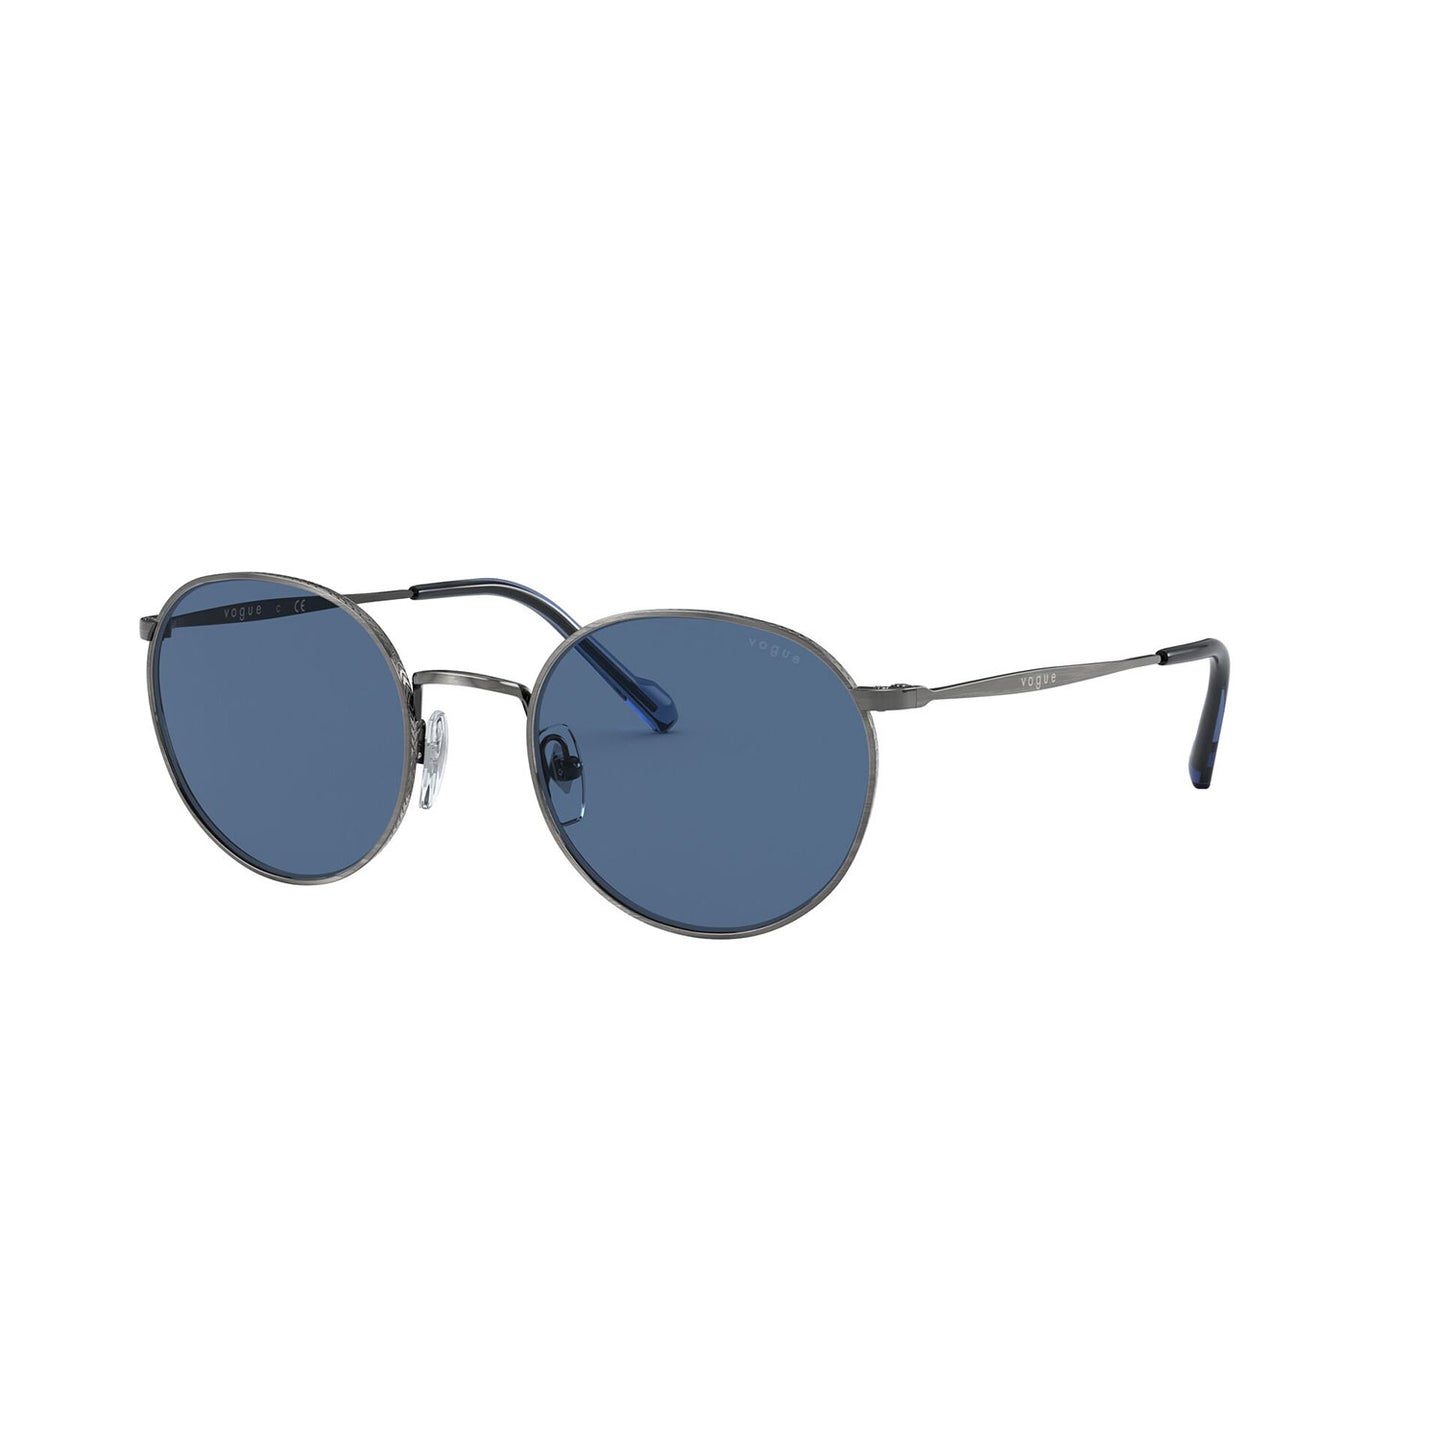 sunglasses vogue vo 4182s color 513680 silver antique